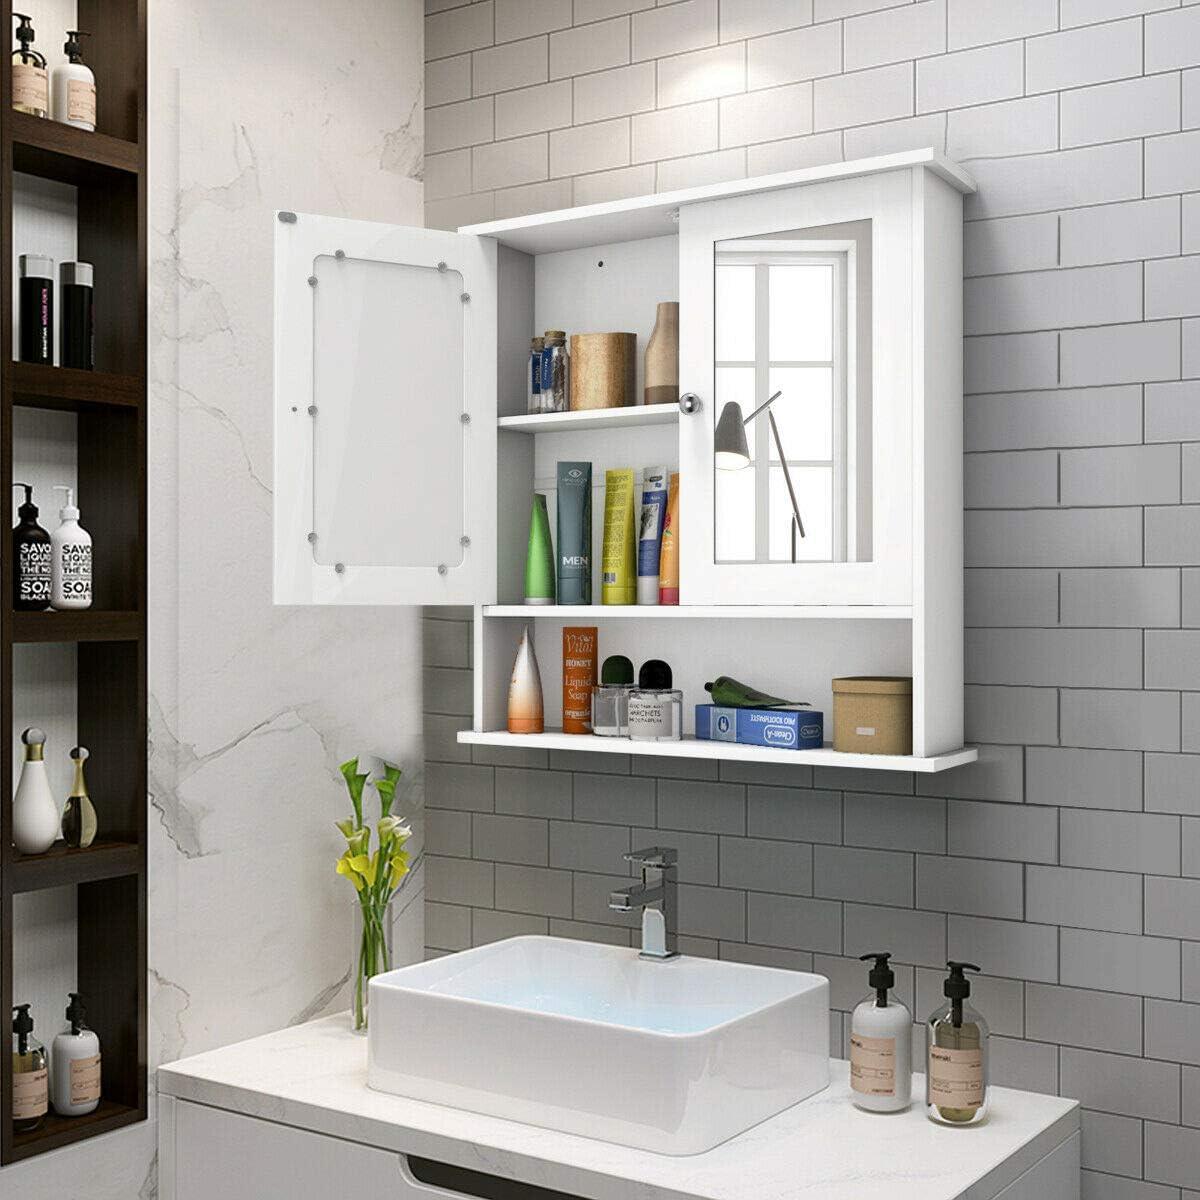  Mueble de baño con espejo de pared para baño, toallero para baño,  armario de baño montado en la pared, doble puerta montado en la pared  (color madera, tamaño: 278,351.4 in) 